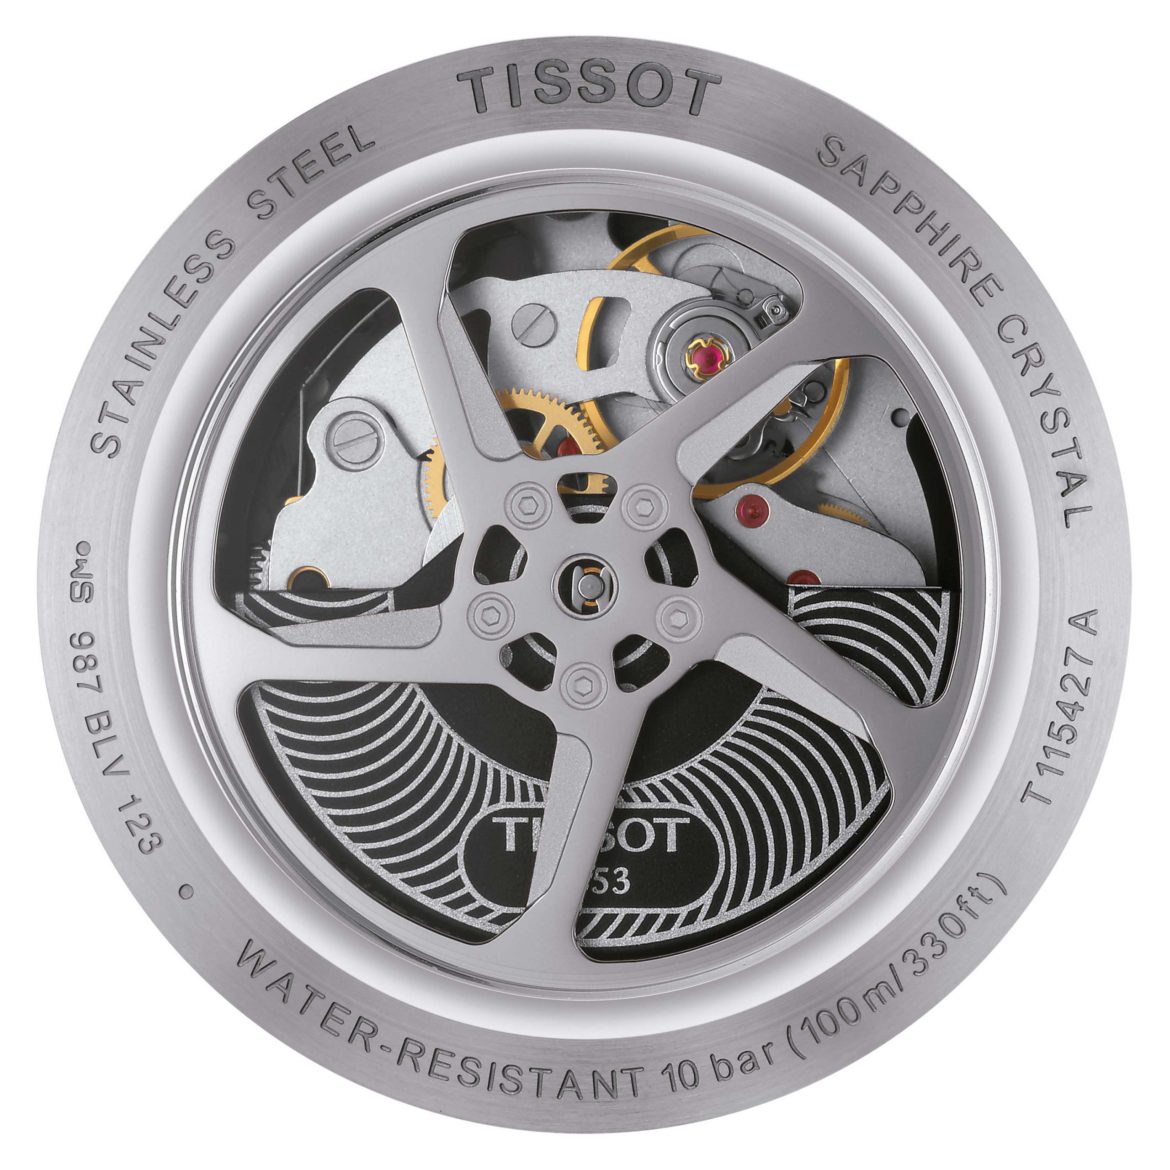 TISSOT</br>Tissot T-Race Chronograph Automatic</br>T1154272706100